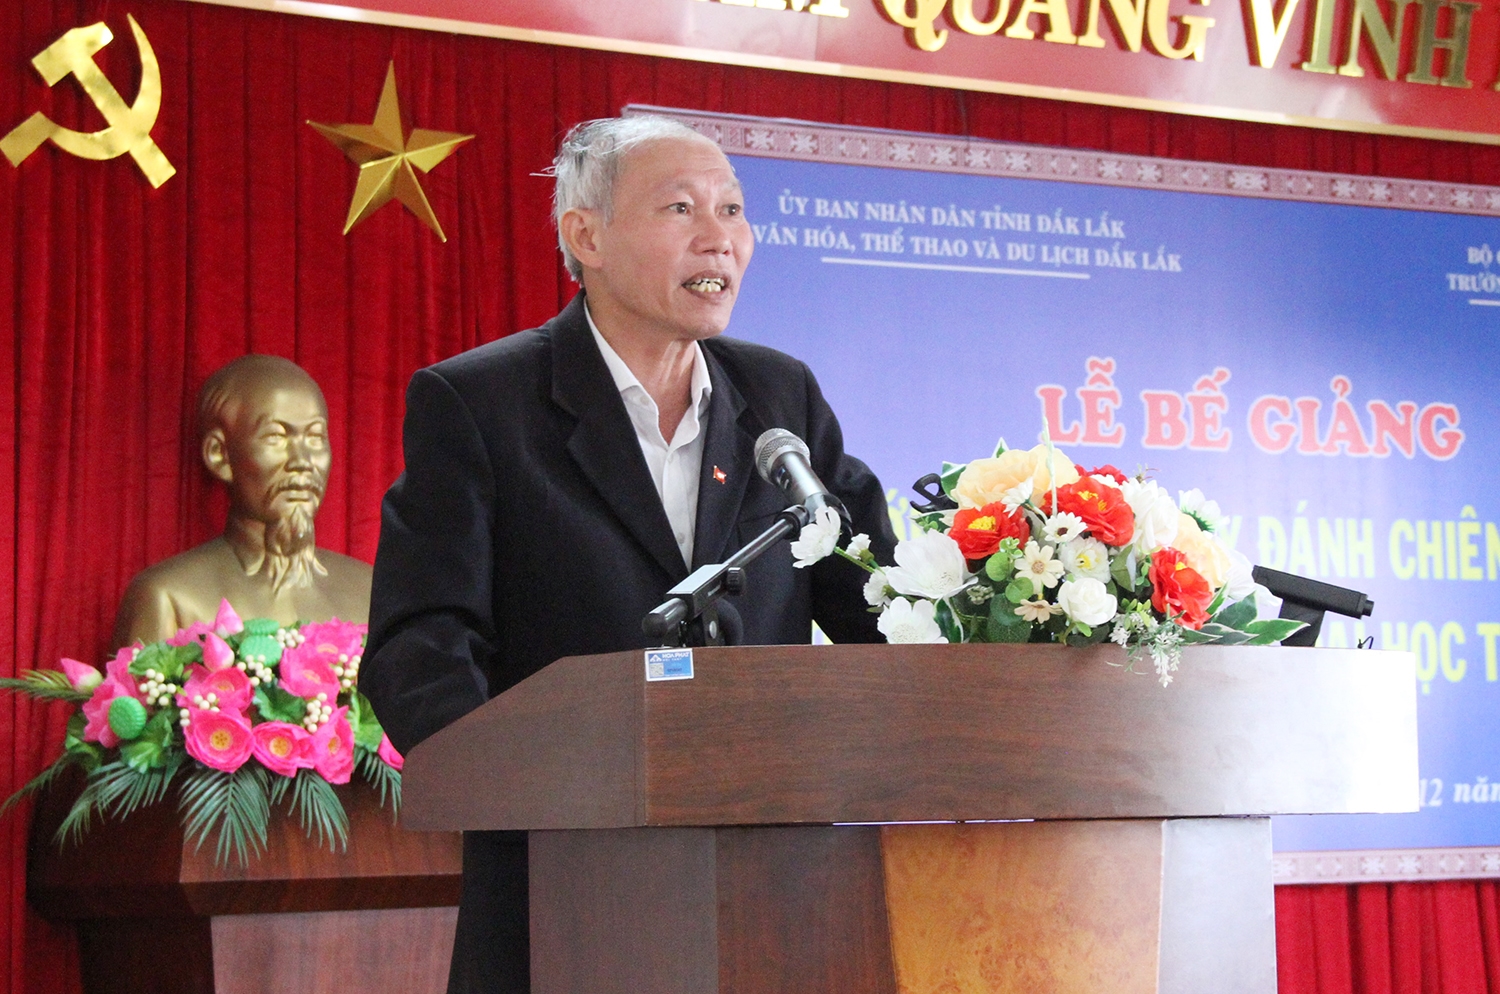 Ông Thái Hồng Hà - Giám đốc Sở Văn hóa, Thể thao và Du lịch Đắk Lắk phát biểu tại Lễ Bế giảng